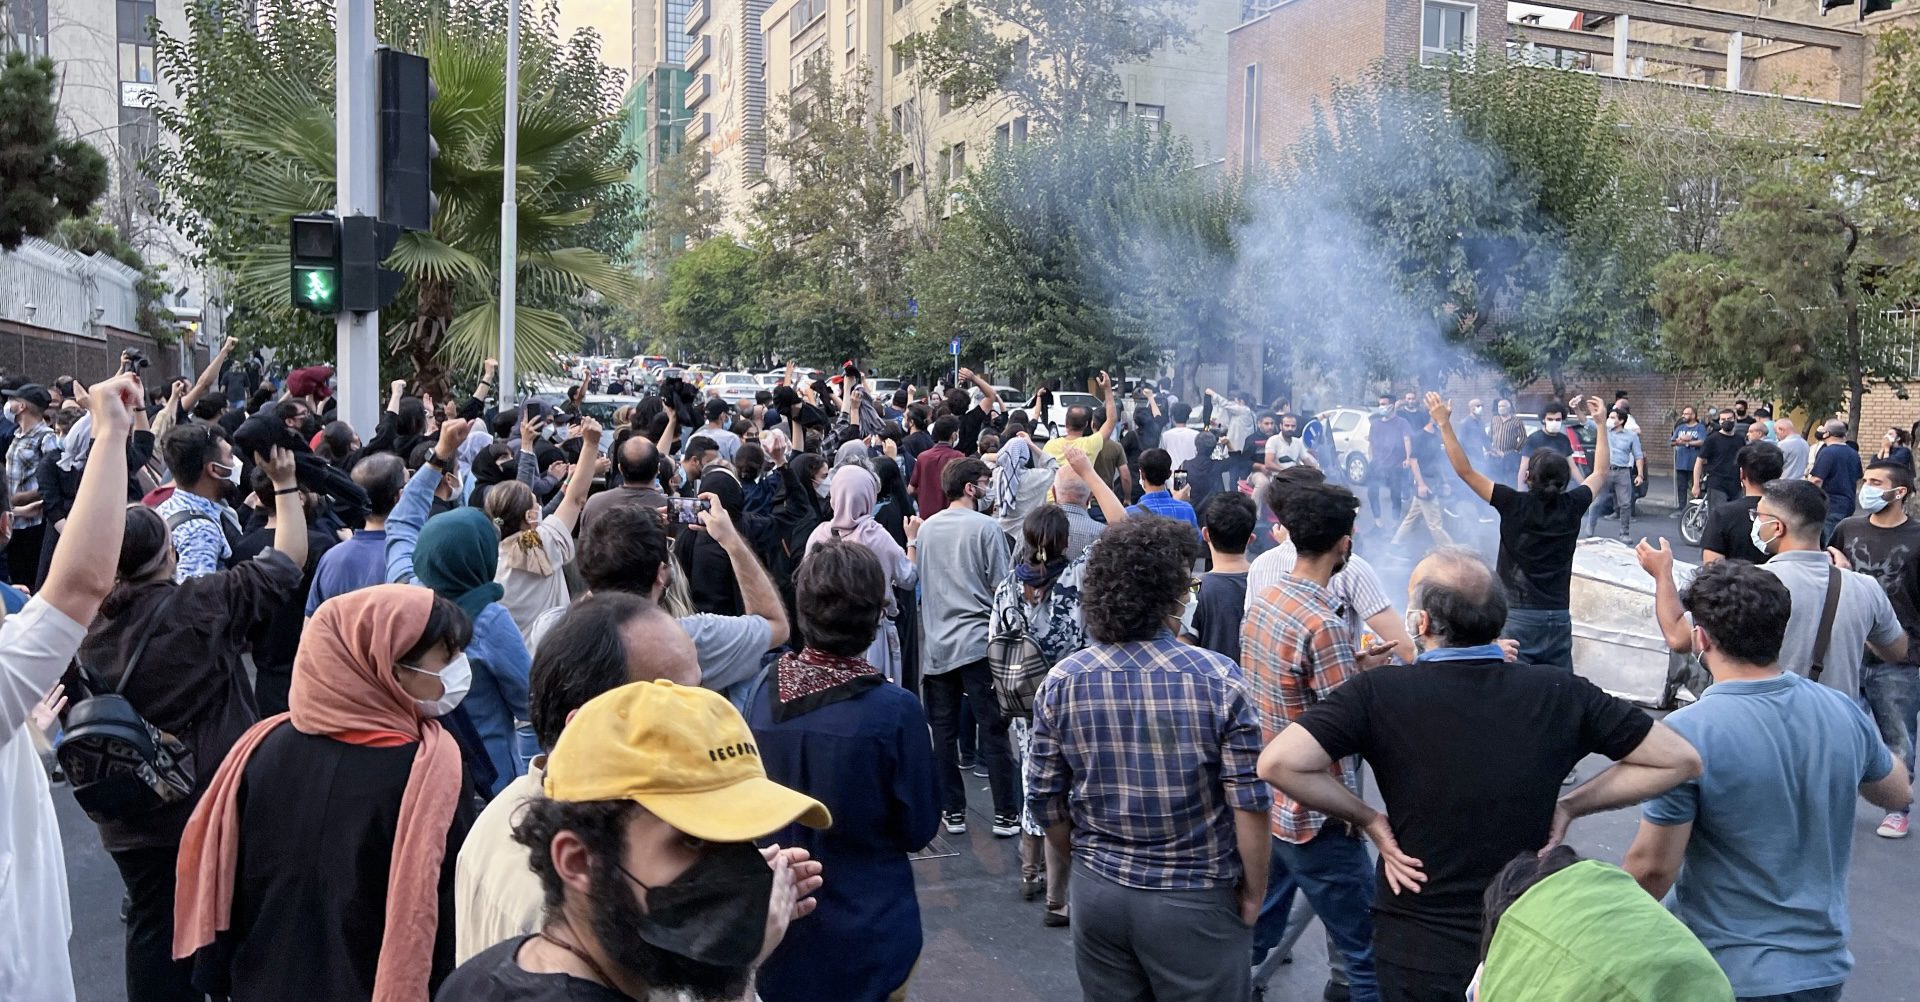 قوات الأمن تقمع المتظاهرين في كردستان إيران بالذخيرة والرصاص